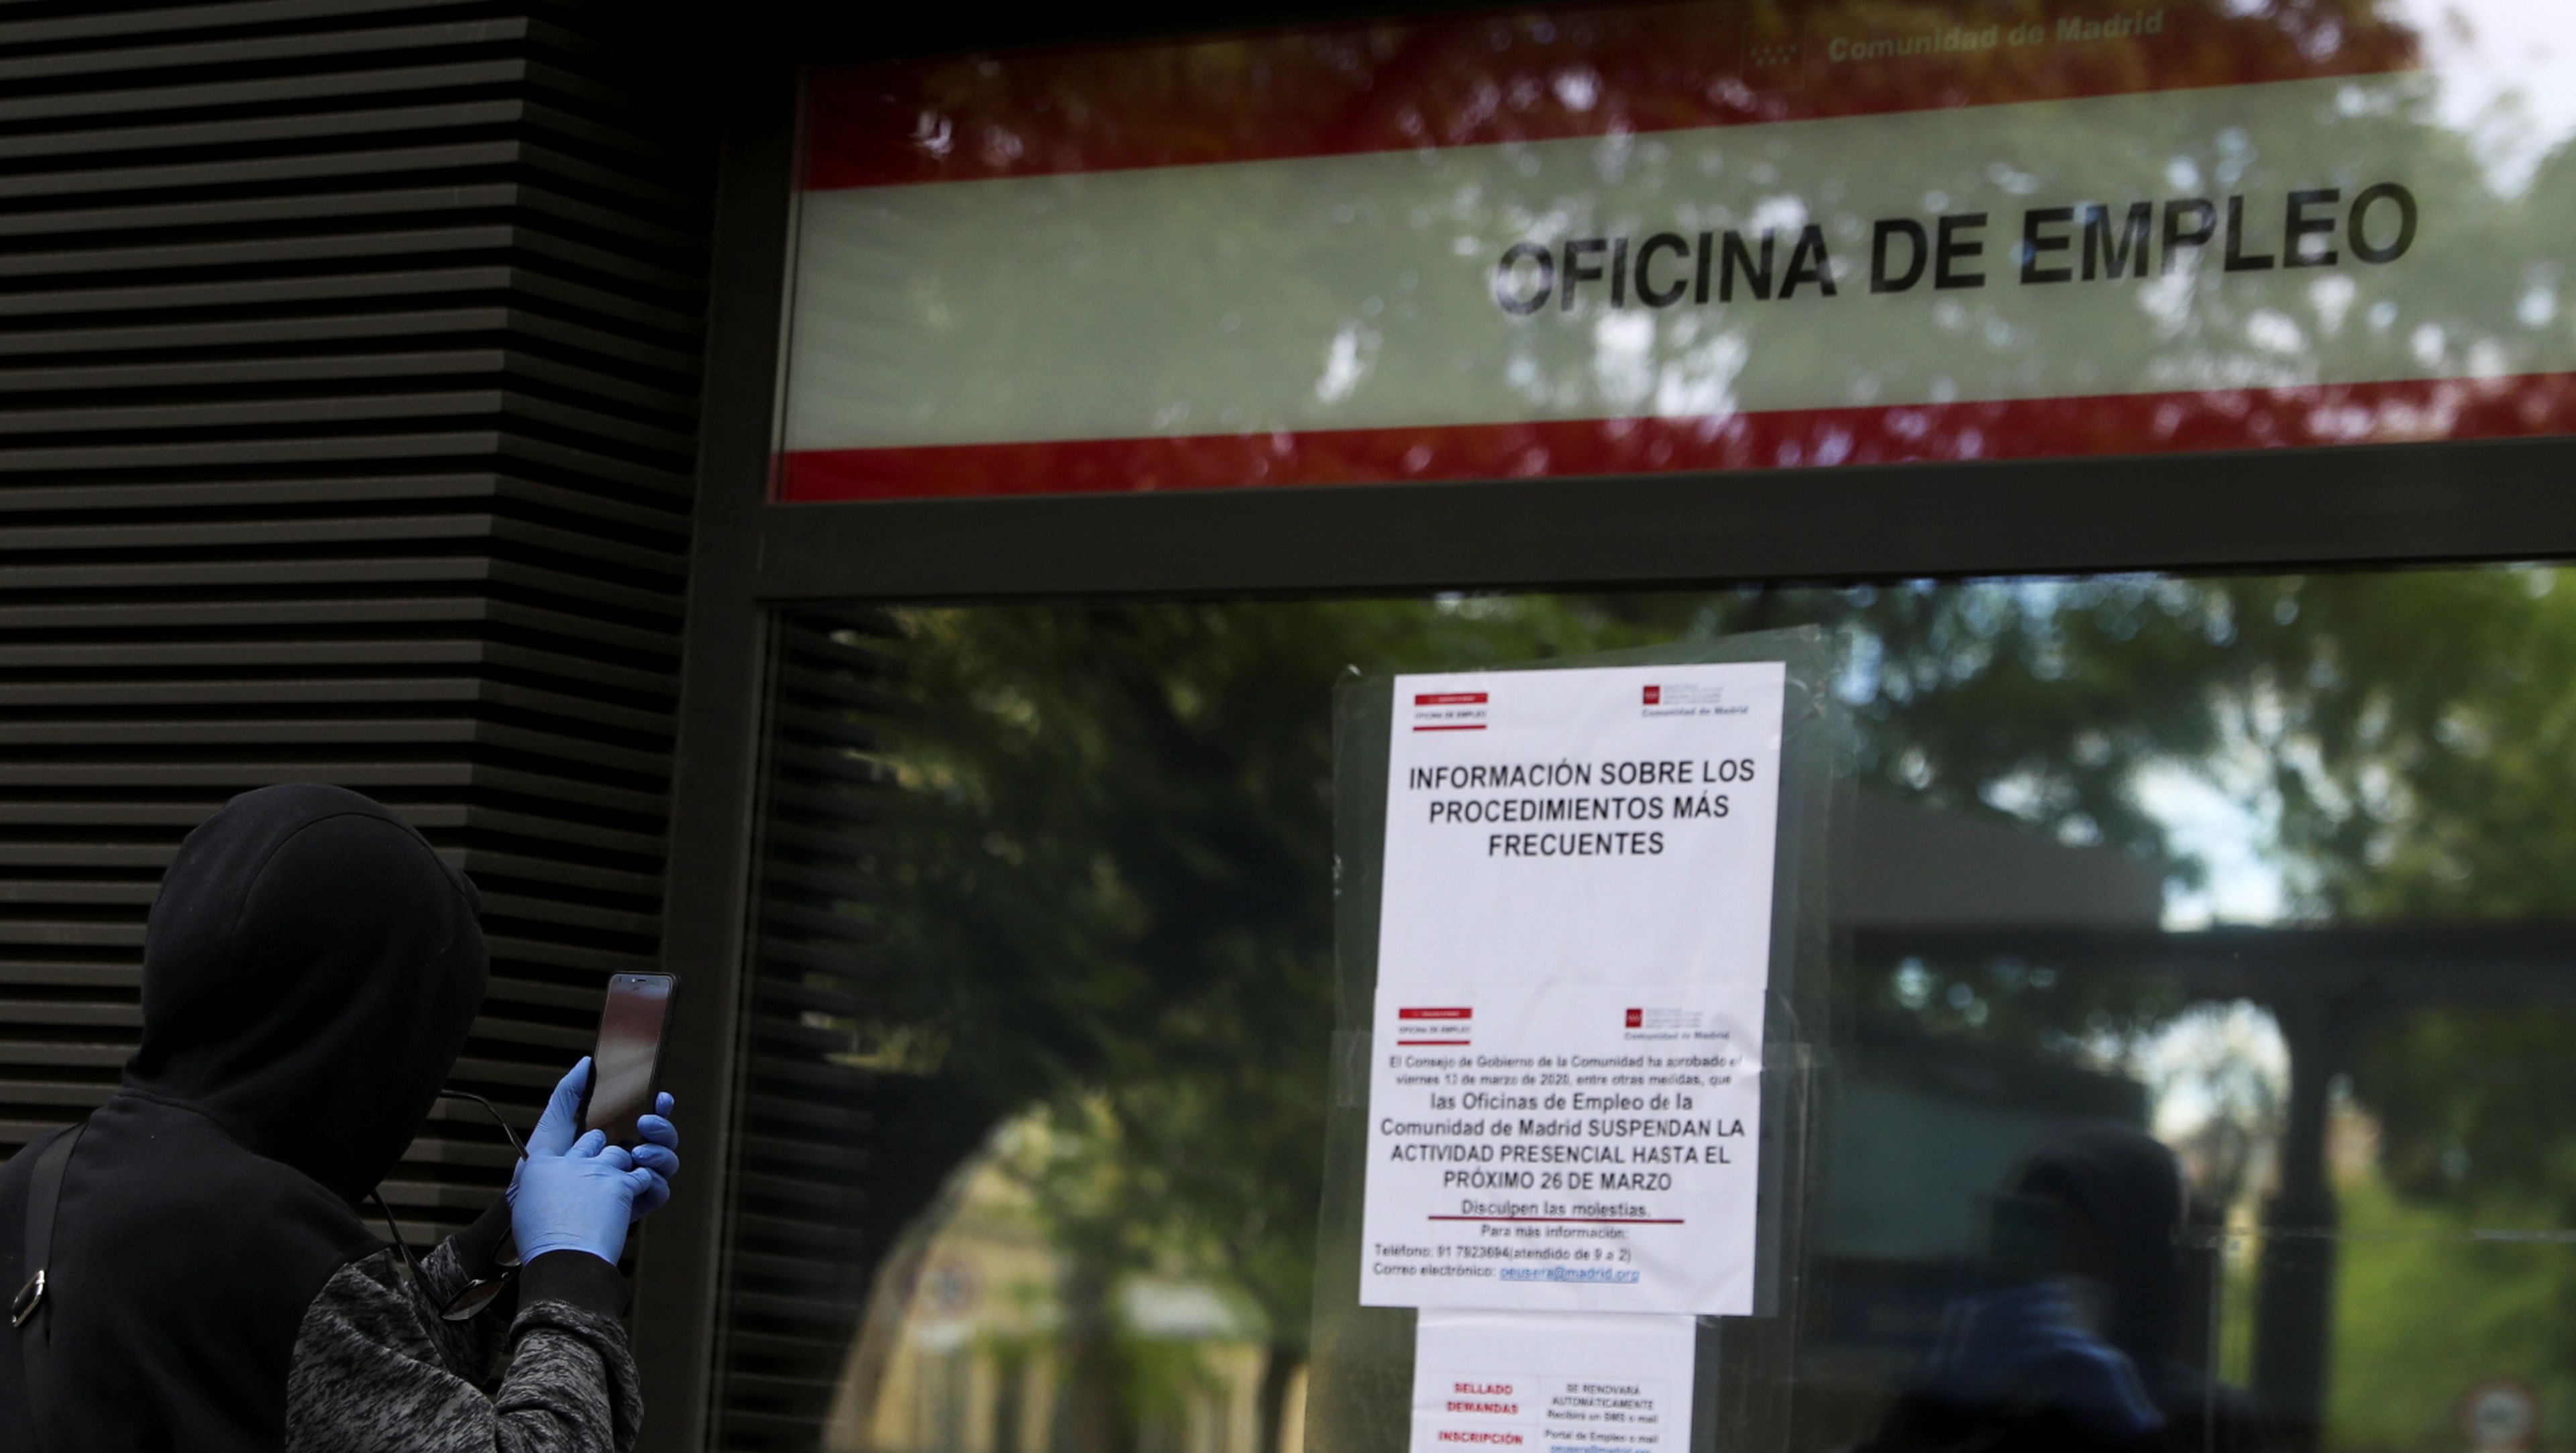 Una persona fotografía los avisos ante el coronavirus en una oficina de empleo de Madrid